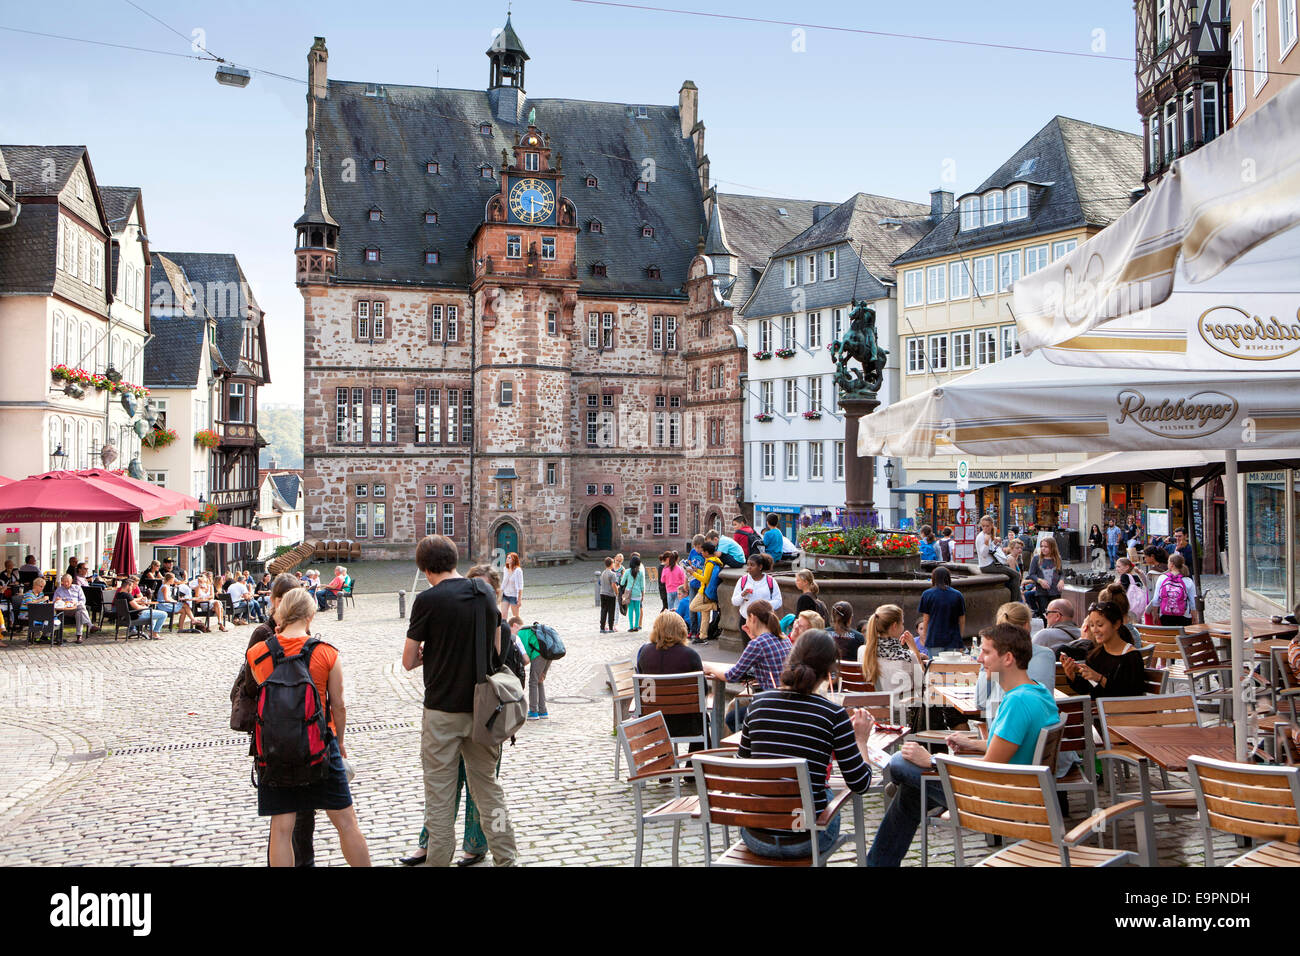 Historisches Rathaus, Marktplatz, Altstadt, Marburg, Hessen, Deutschland, Europa, Stockfoto